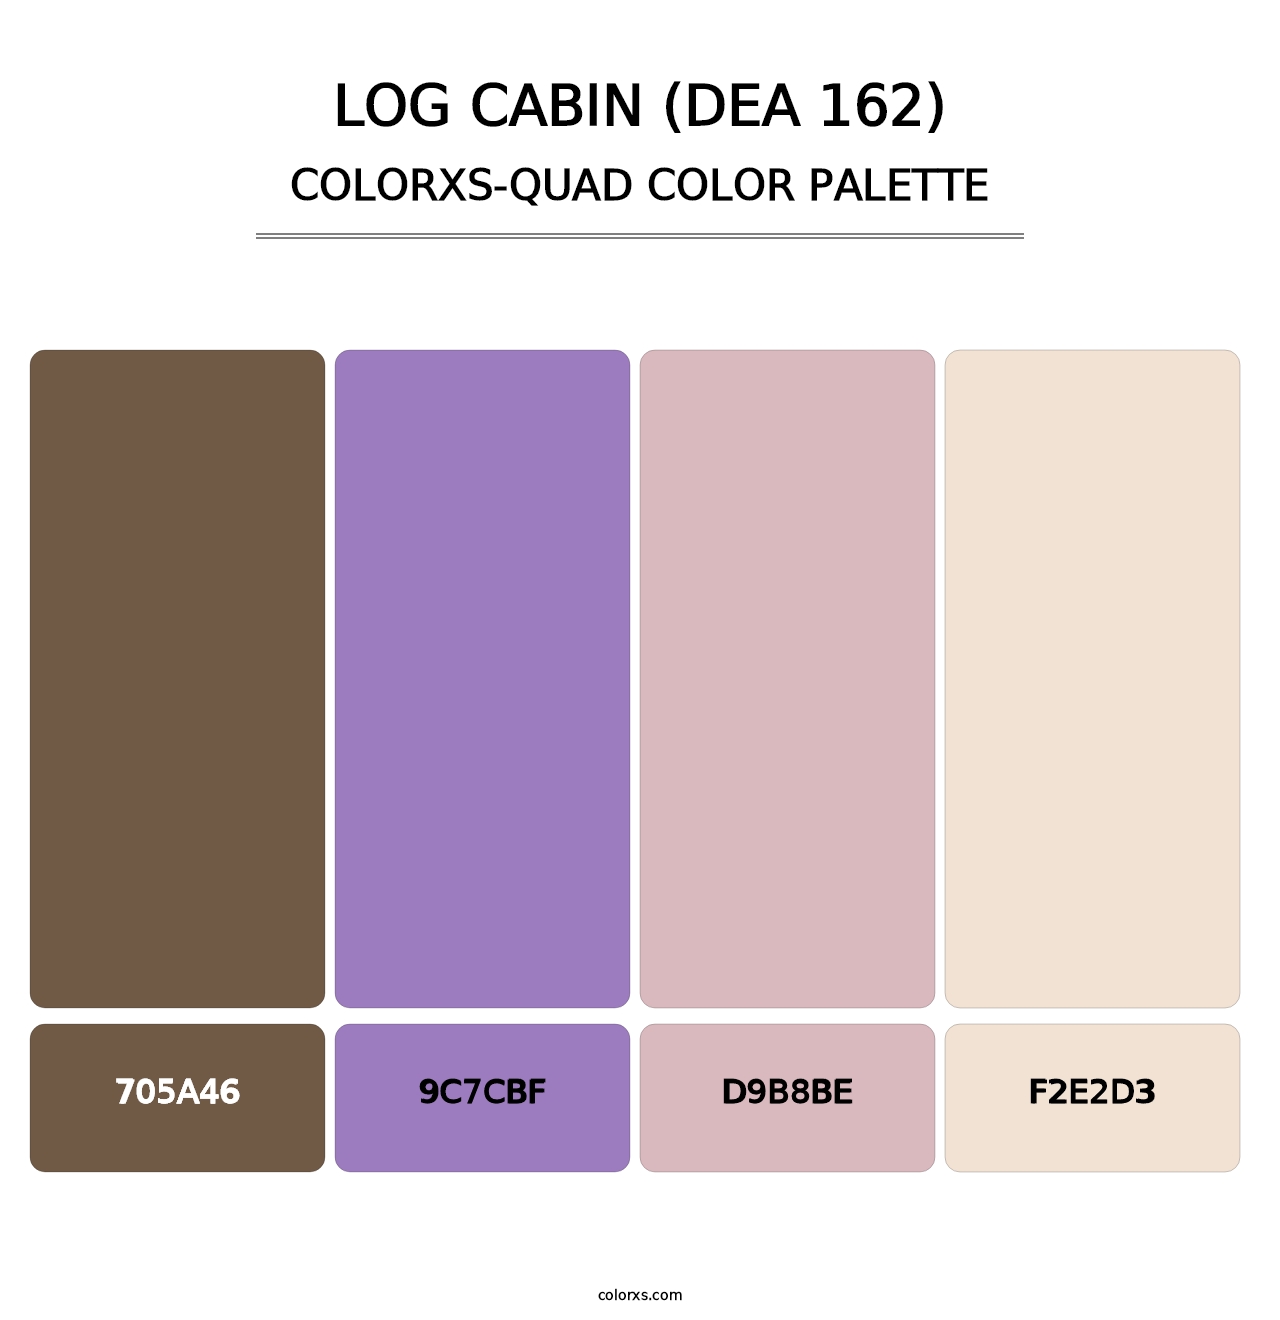 Log Cabin (DEA 162) - Colorxs Quad Palette